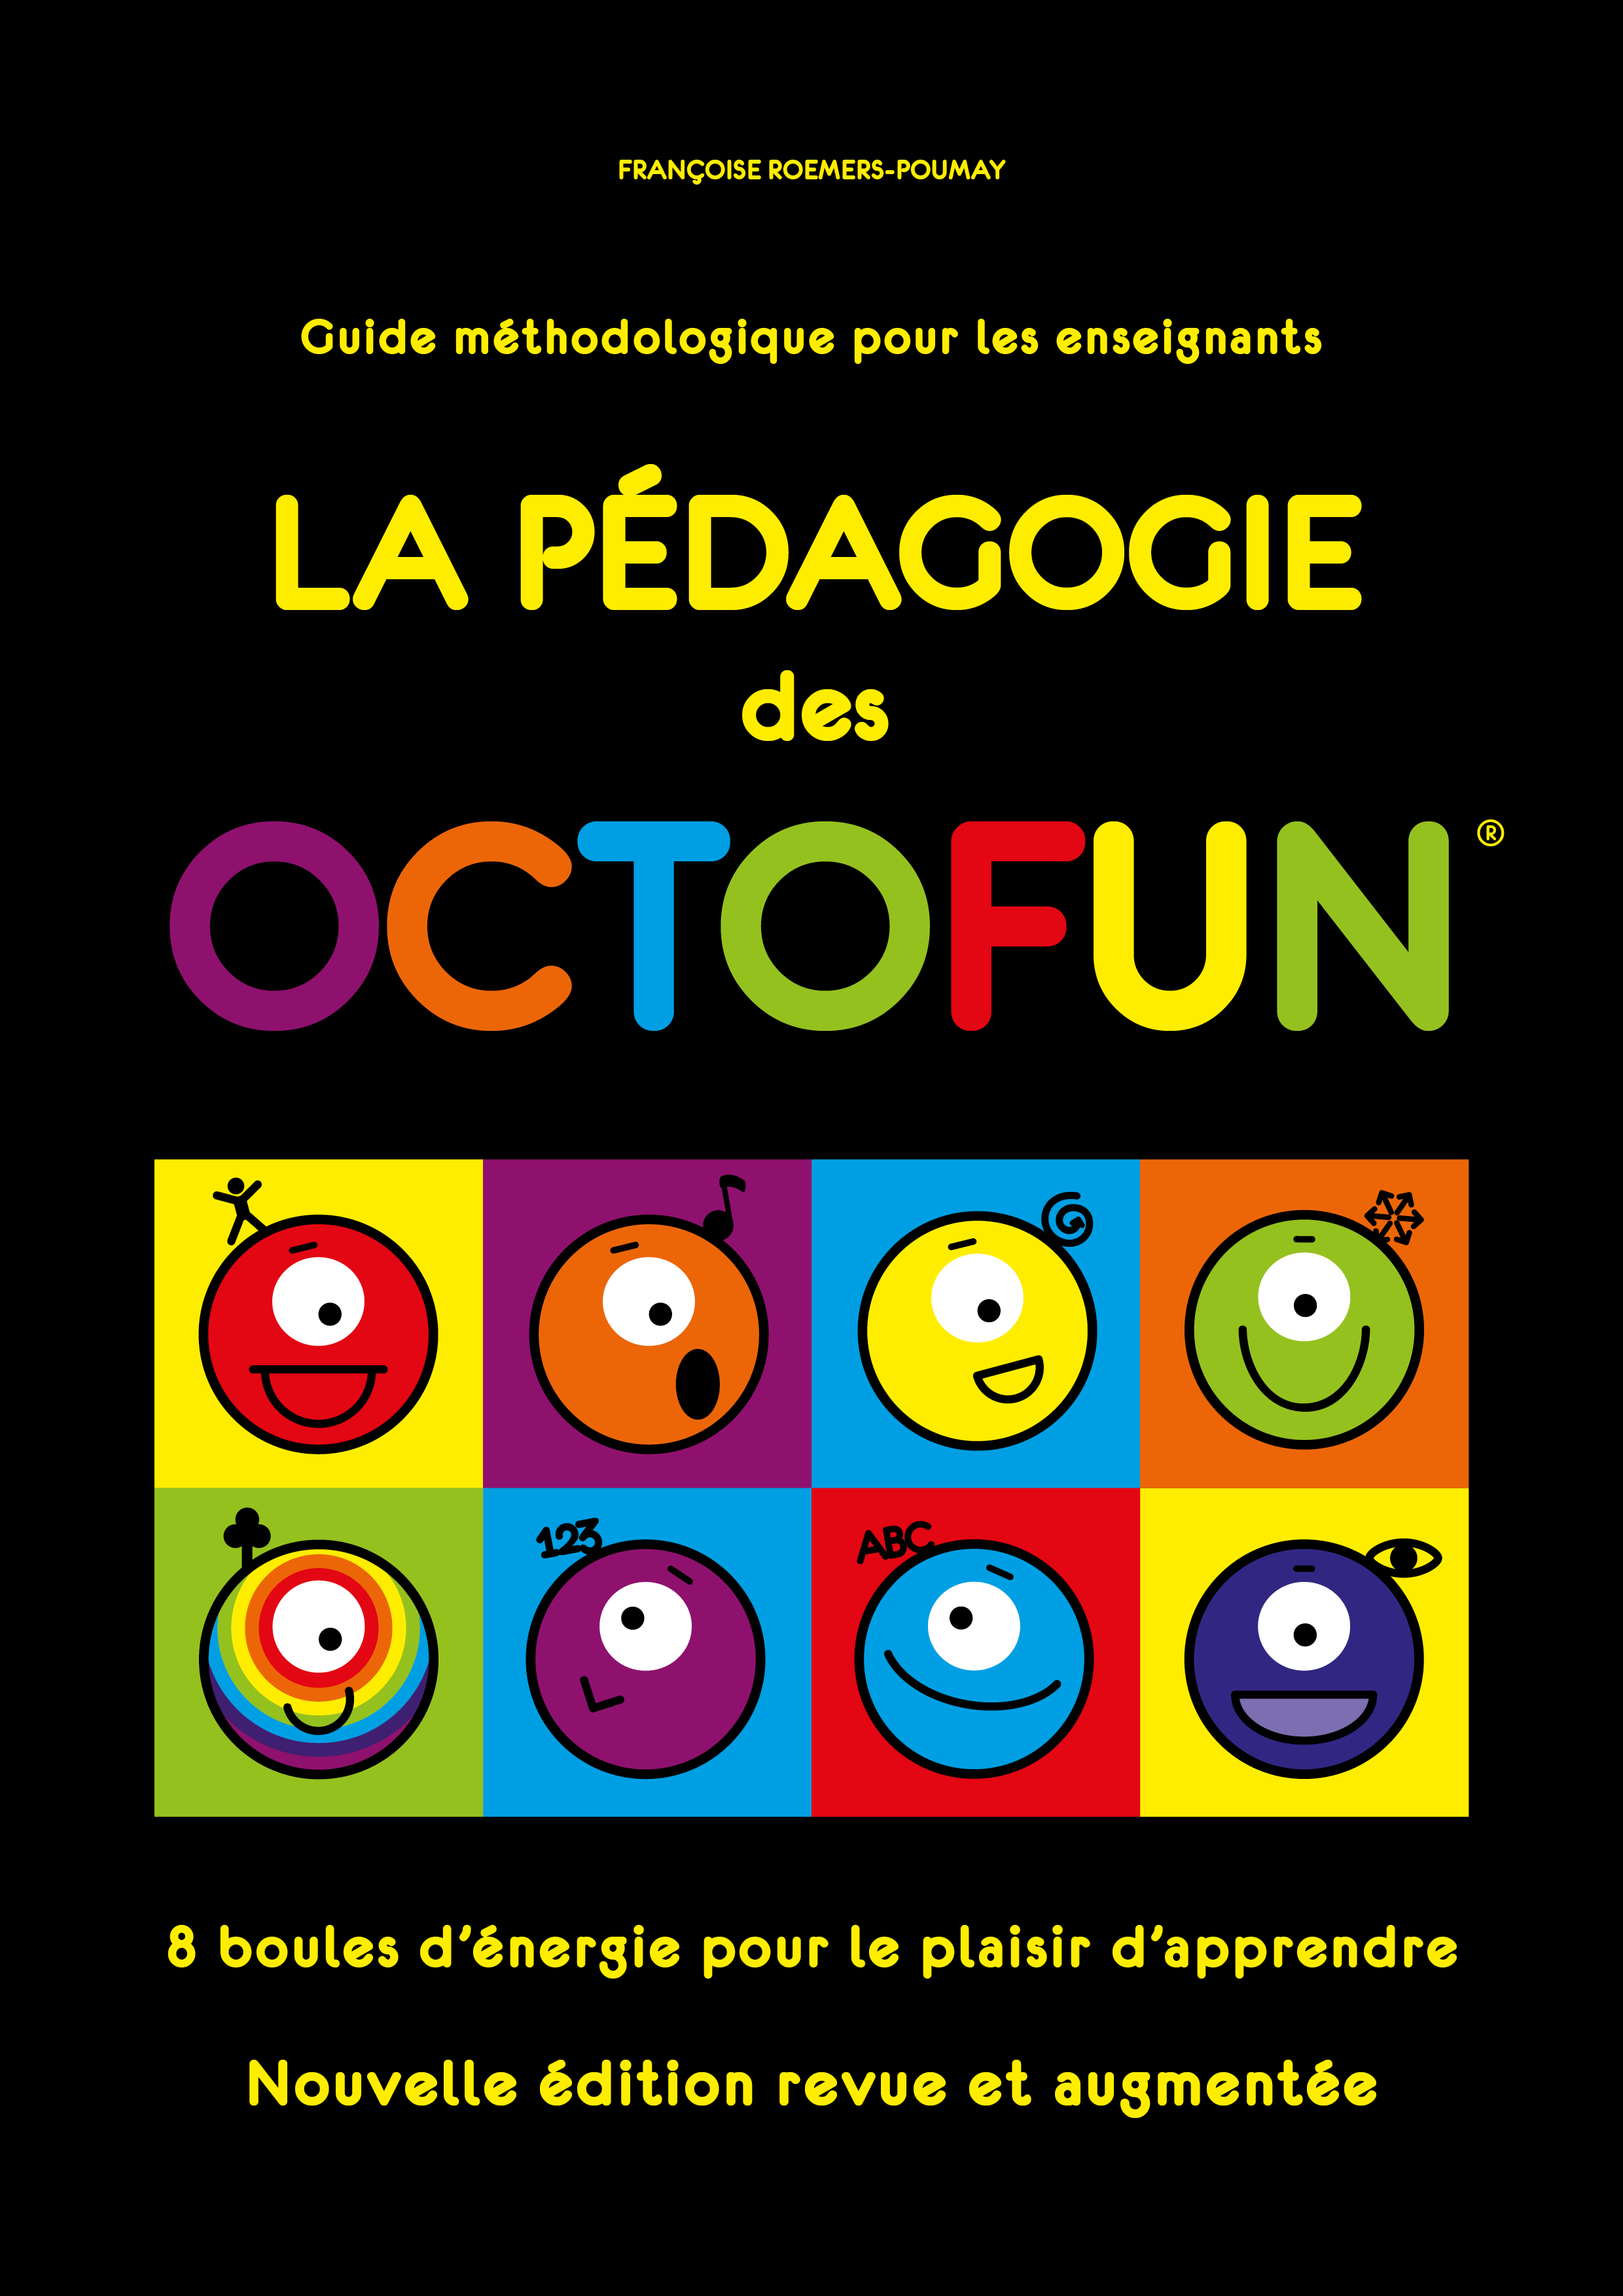 Le Guide Pedagogique Octofun